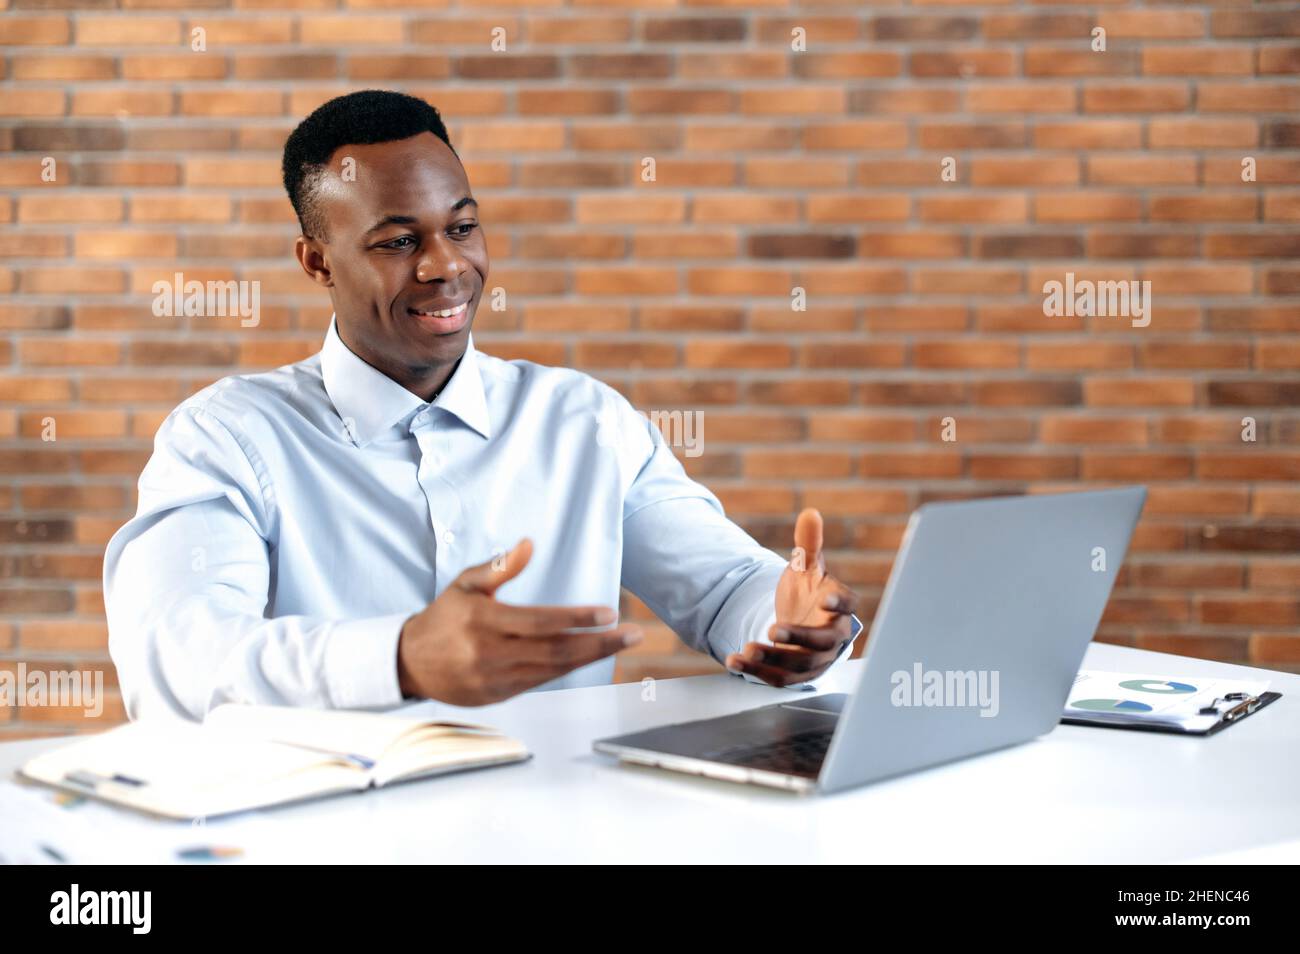 Conversazione remota. L'uomo d'affari afro-americano di successo, l'azienda del ceo, il responsabile di vendite, usa il laptop per la comunicazione a distanza con il cliente, siede nell'ufficio moderno, gesturing con le sue mani, sorridente Foto Stock